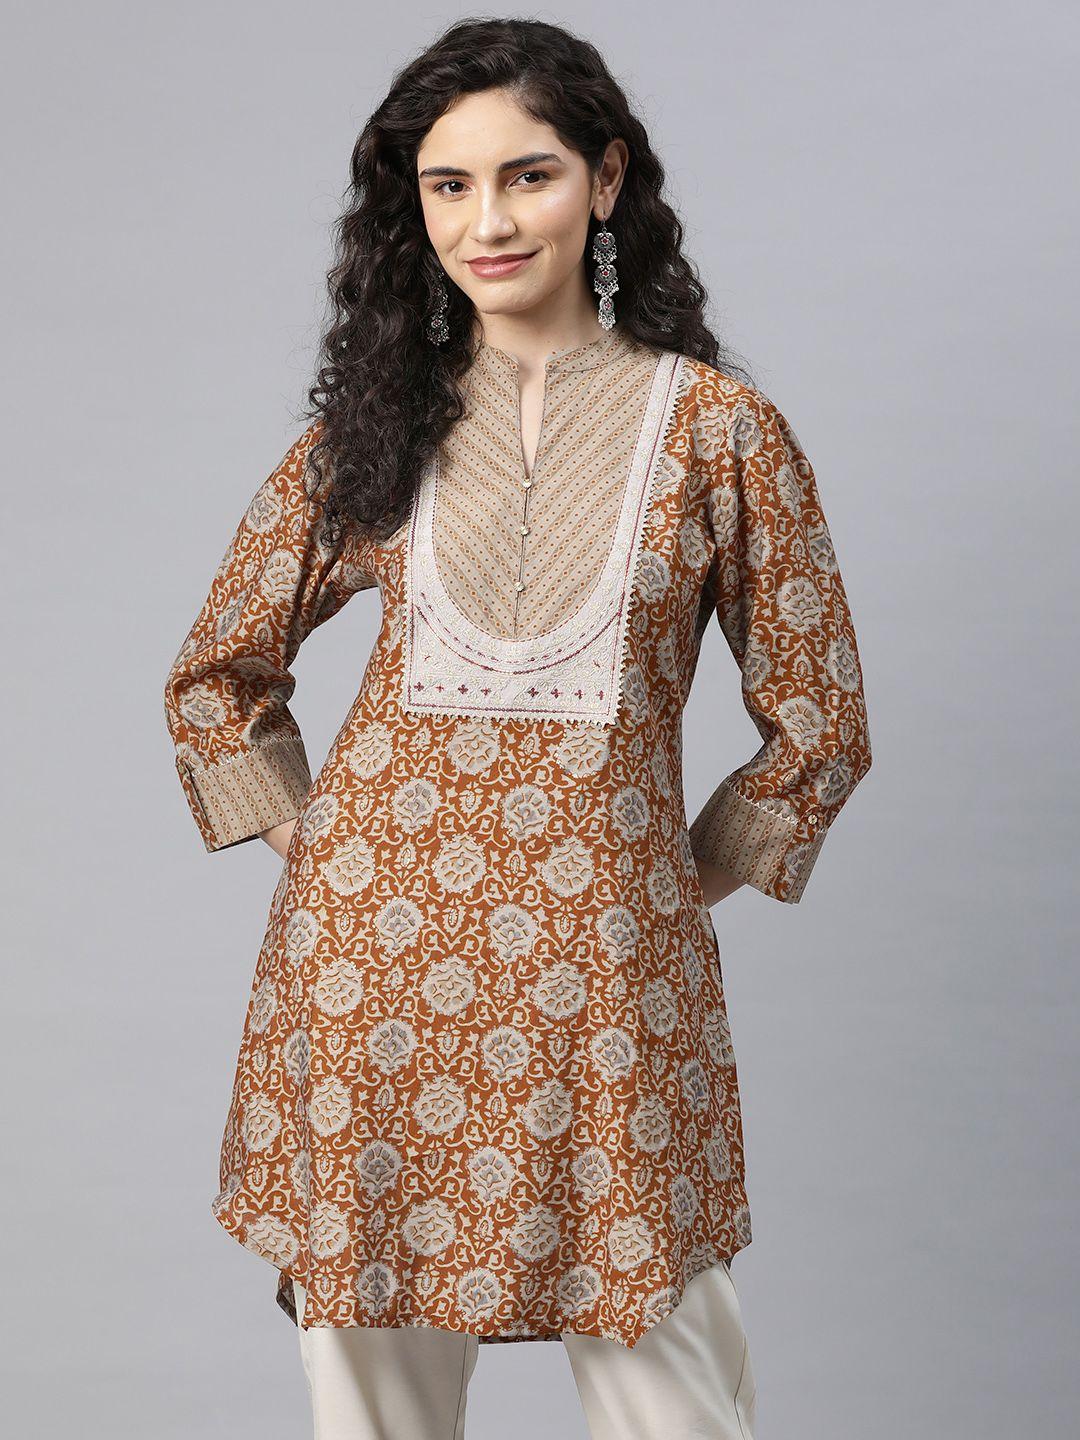 nayam by lakshita modal mandarin collar printed ethnic tunic